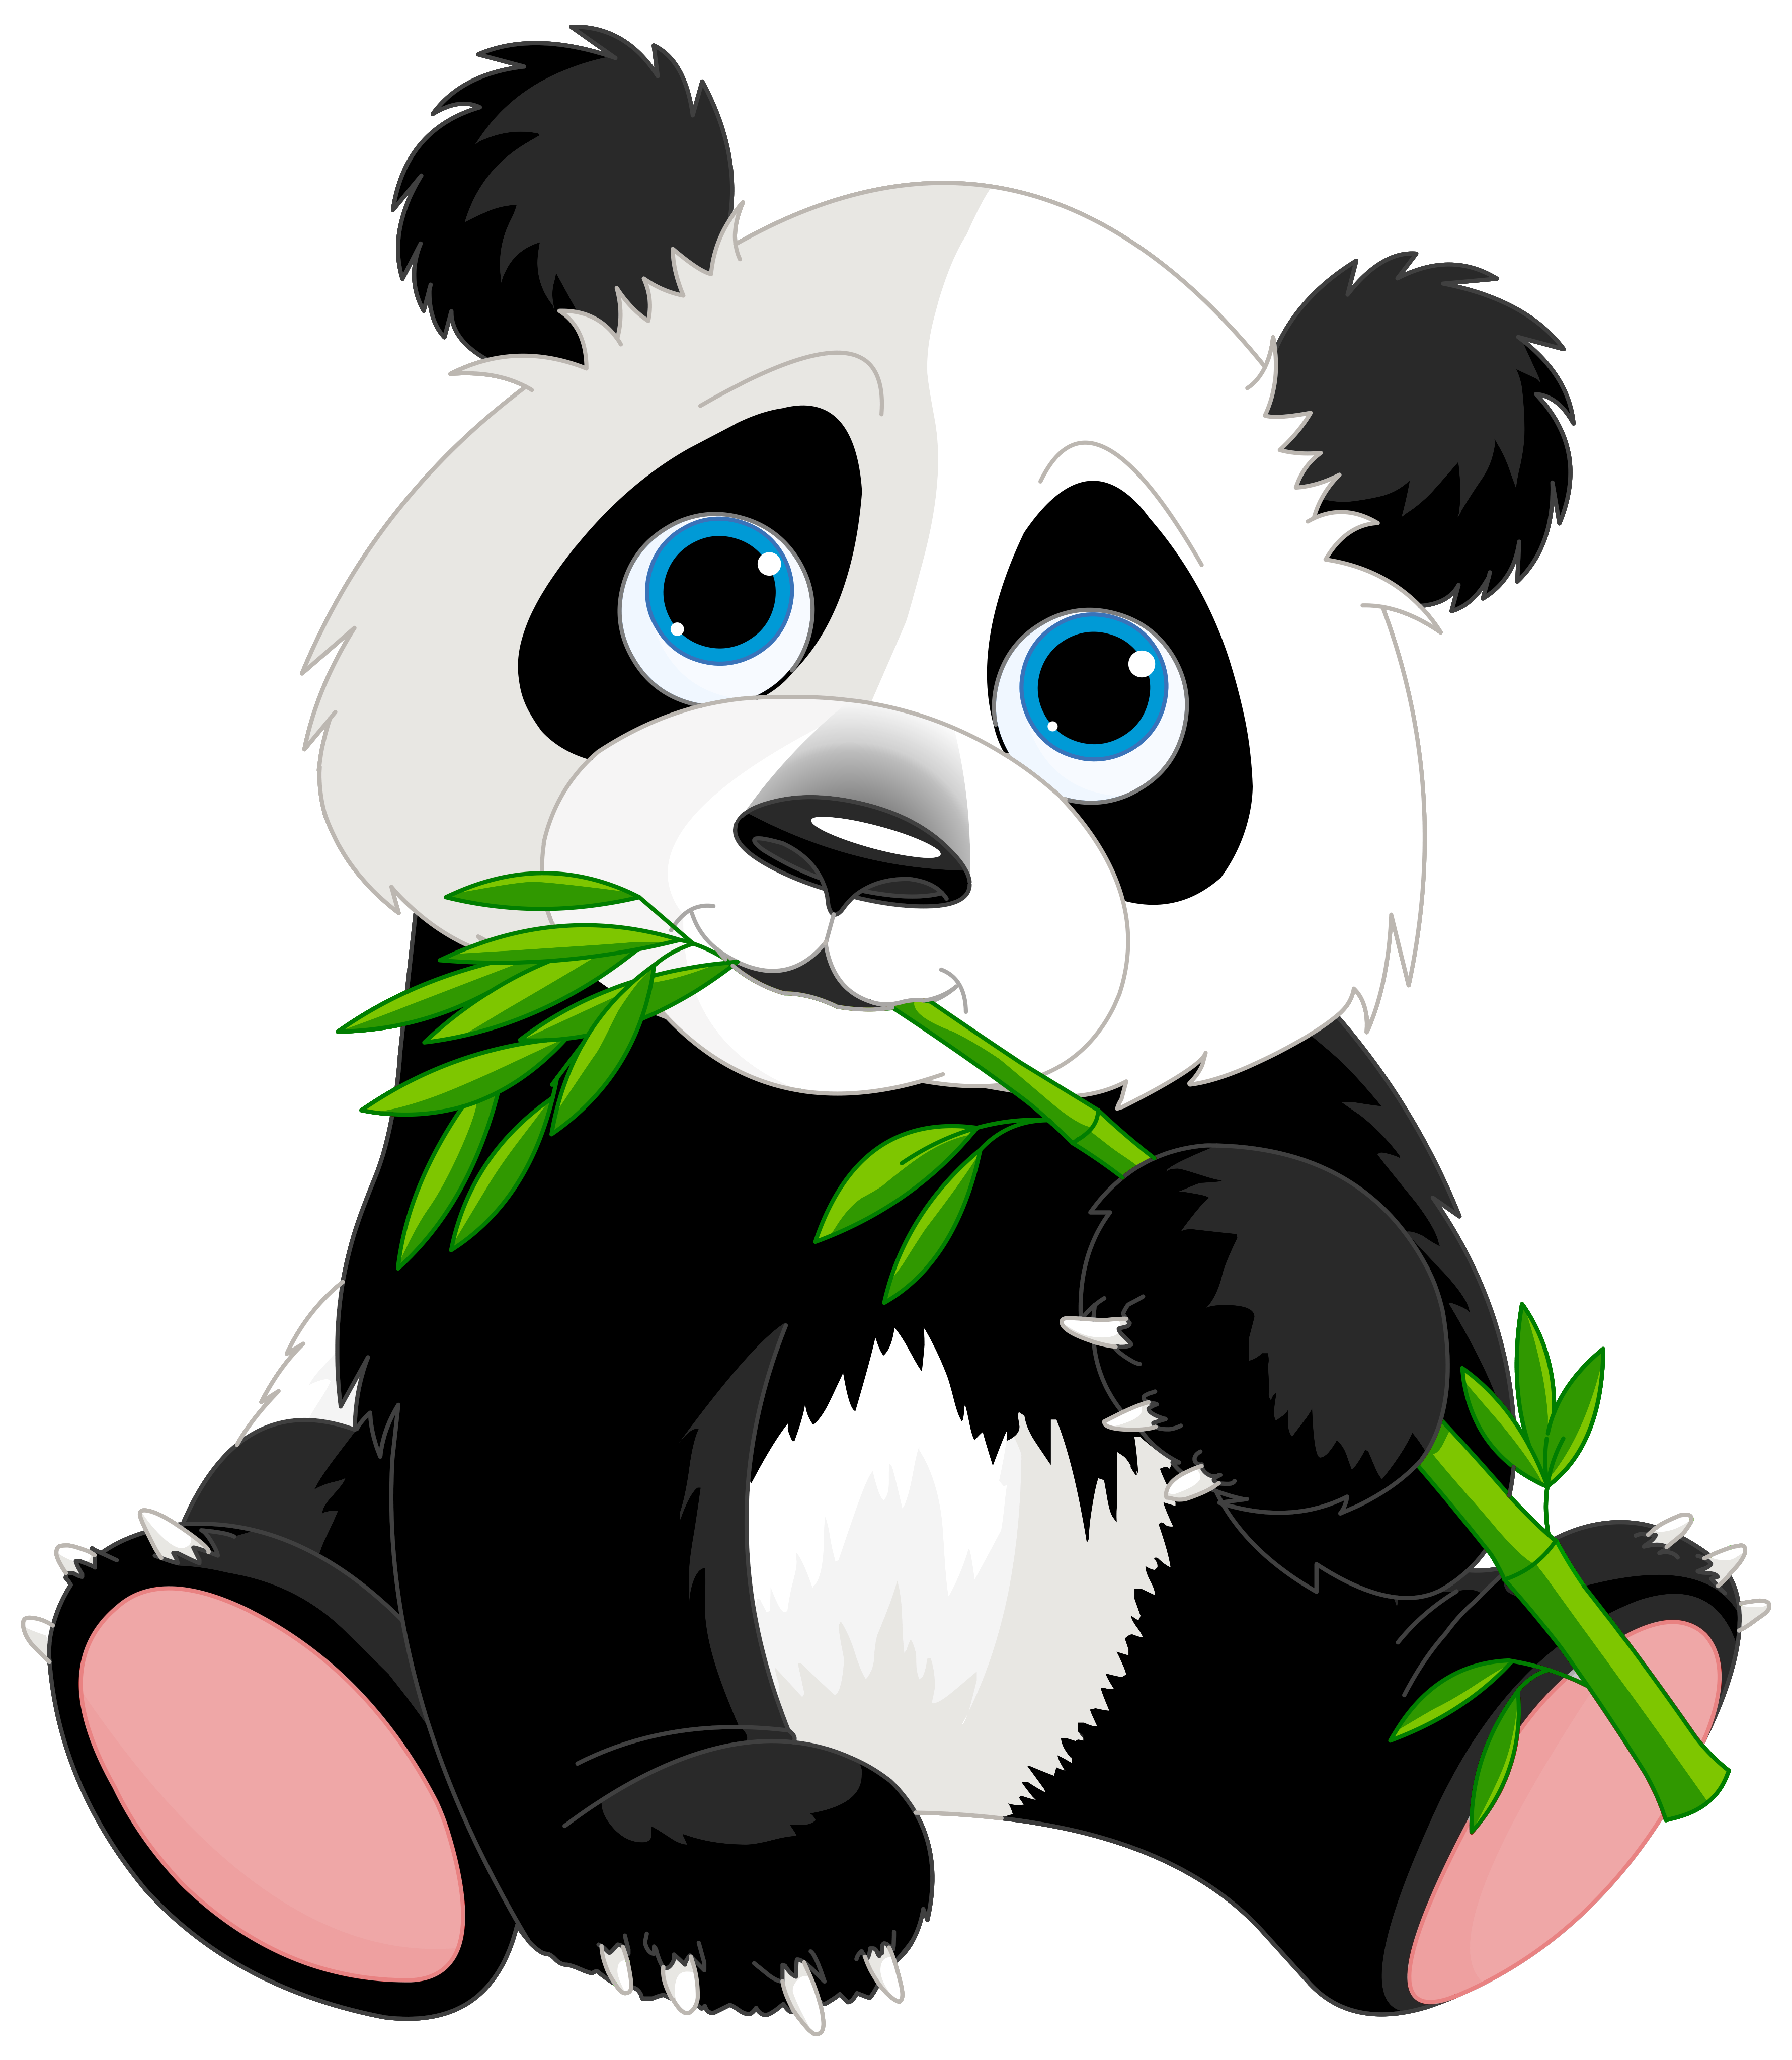 Morning clipart heat. Cute panda cartoon image